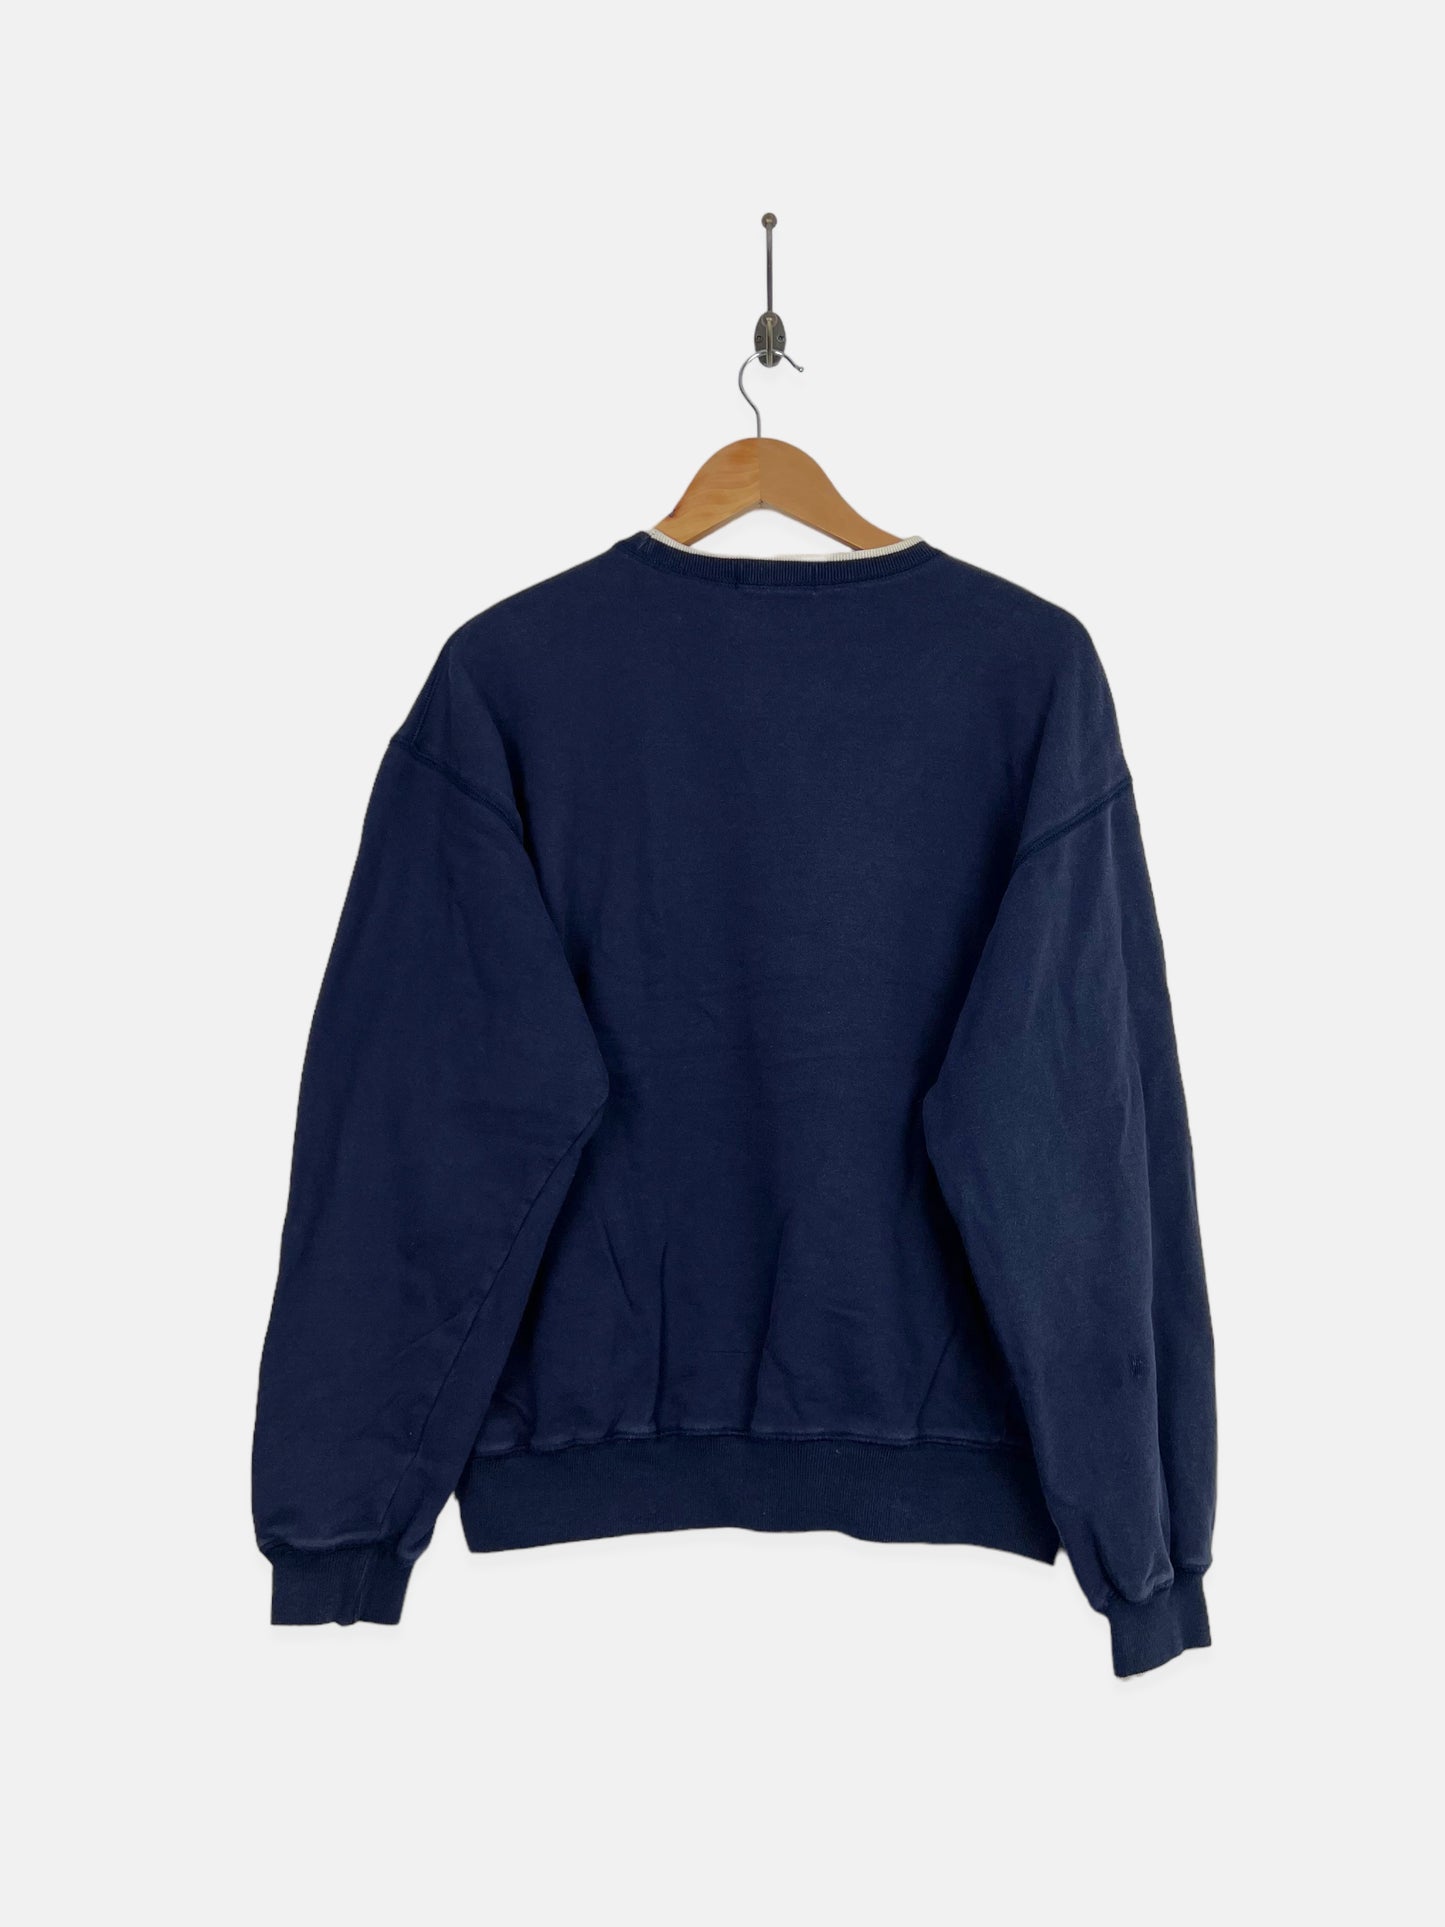 90's Nautica Racing Embroidered Vintage Sweatshirt Size 14